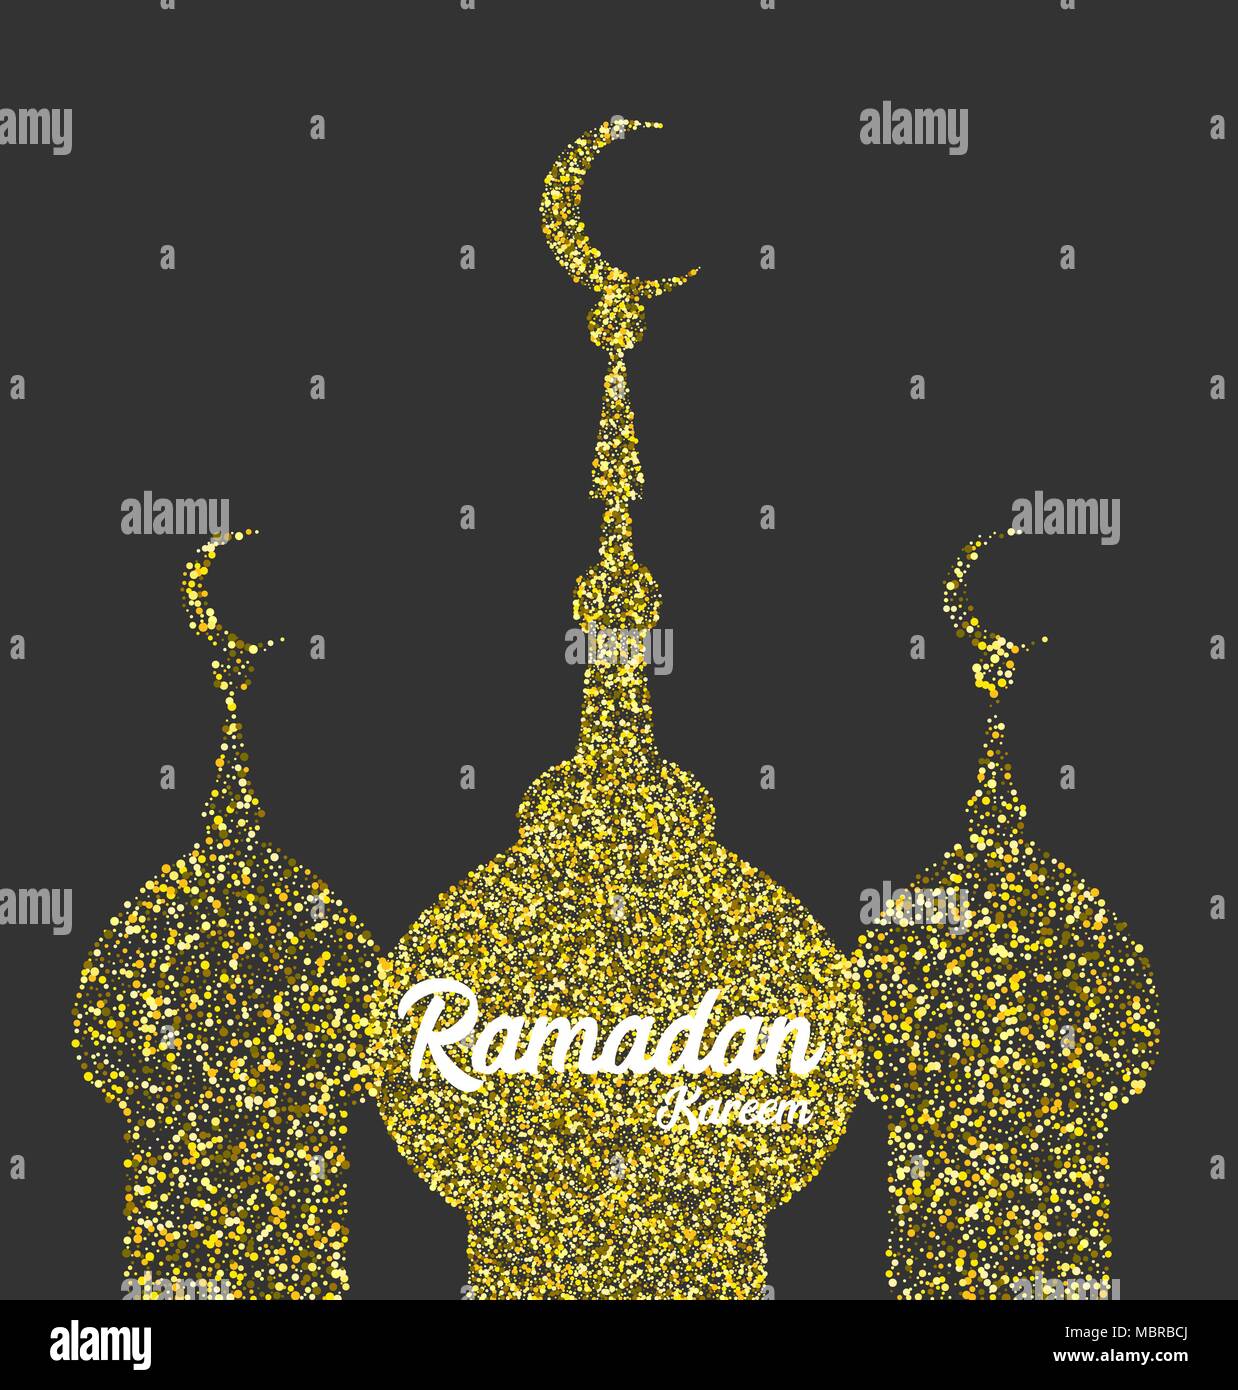 Ramadan Kareem golden sparkle greeting card Stock Vector